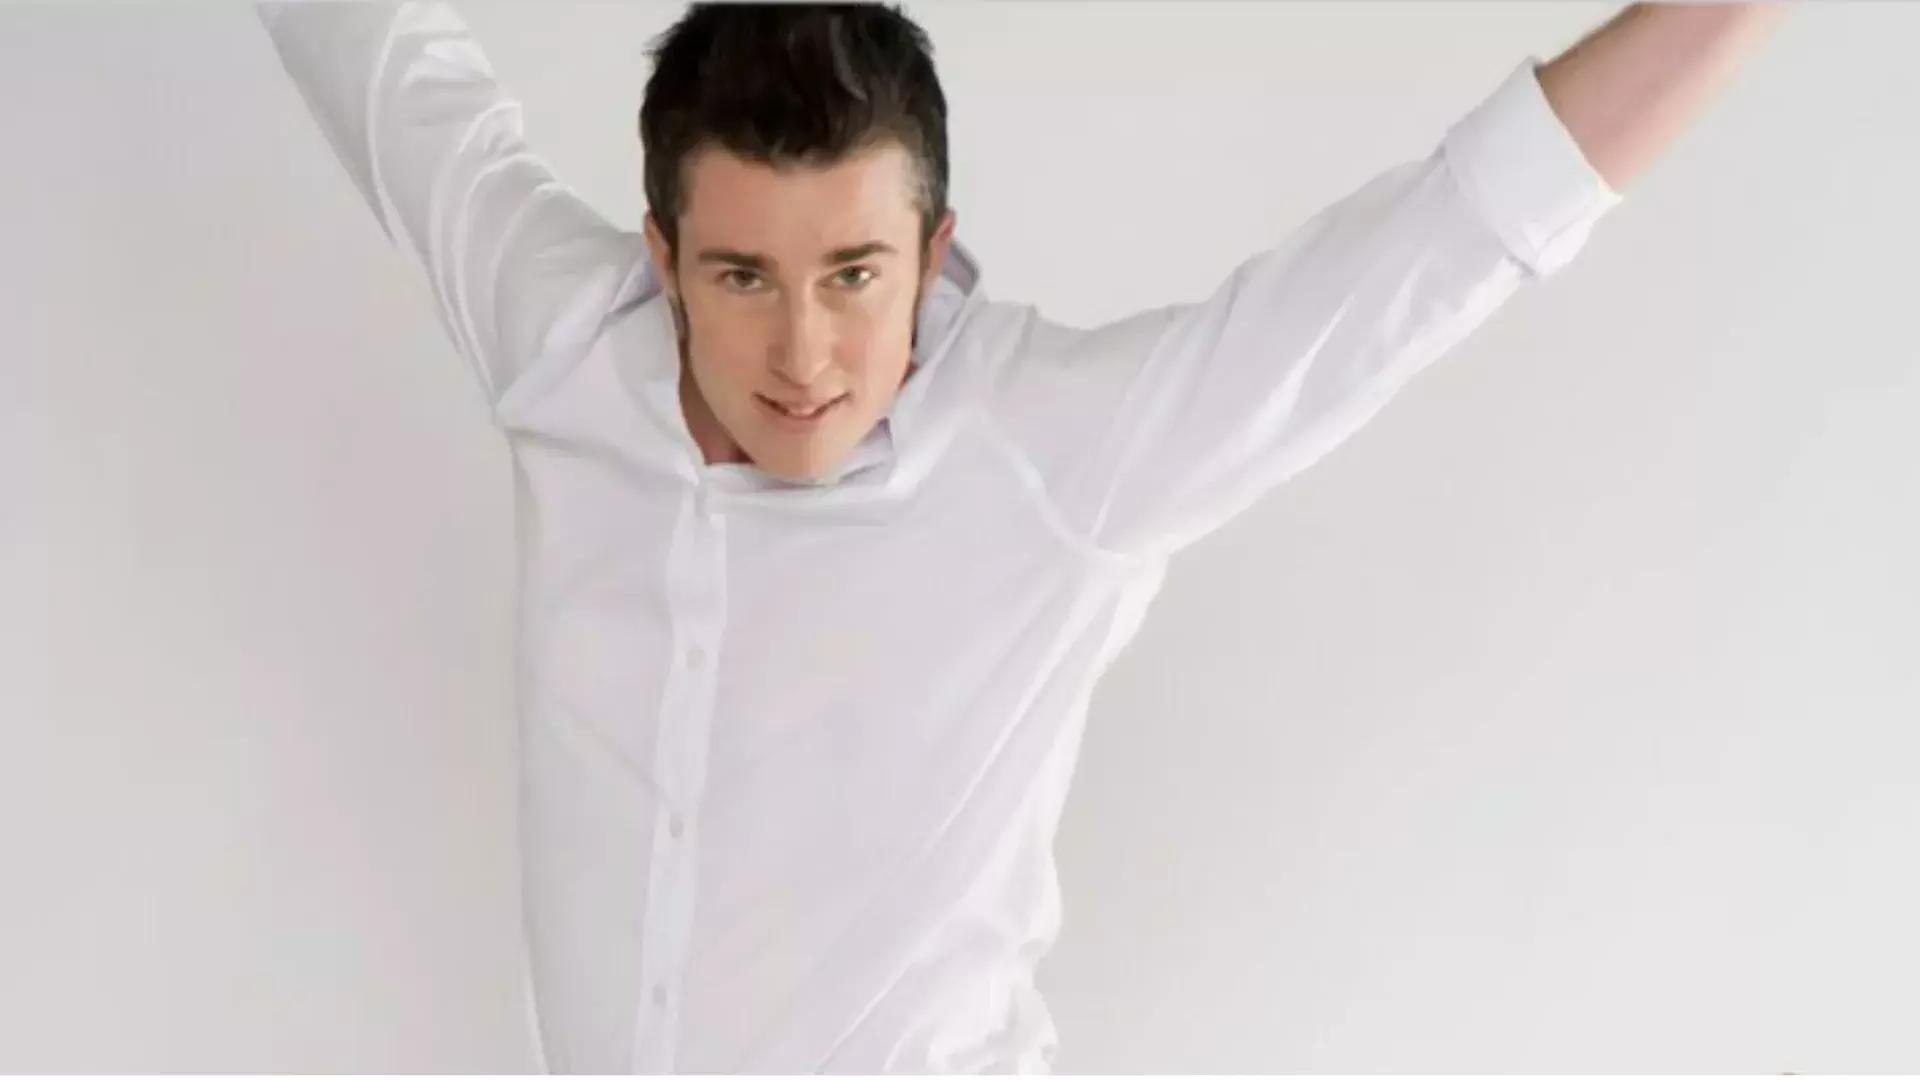 Bild einer Person im weißen Hemd, die in den Rahmen springt